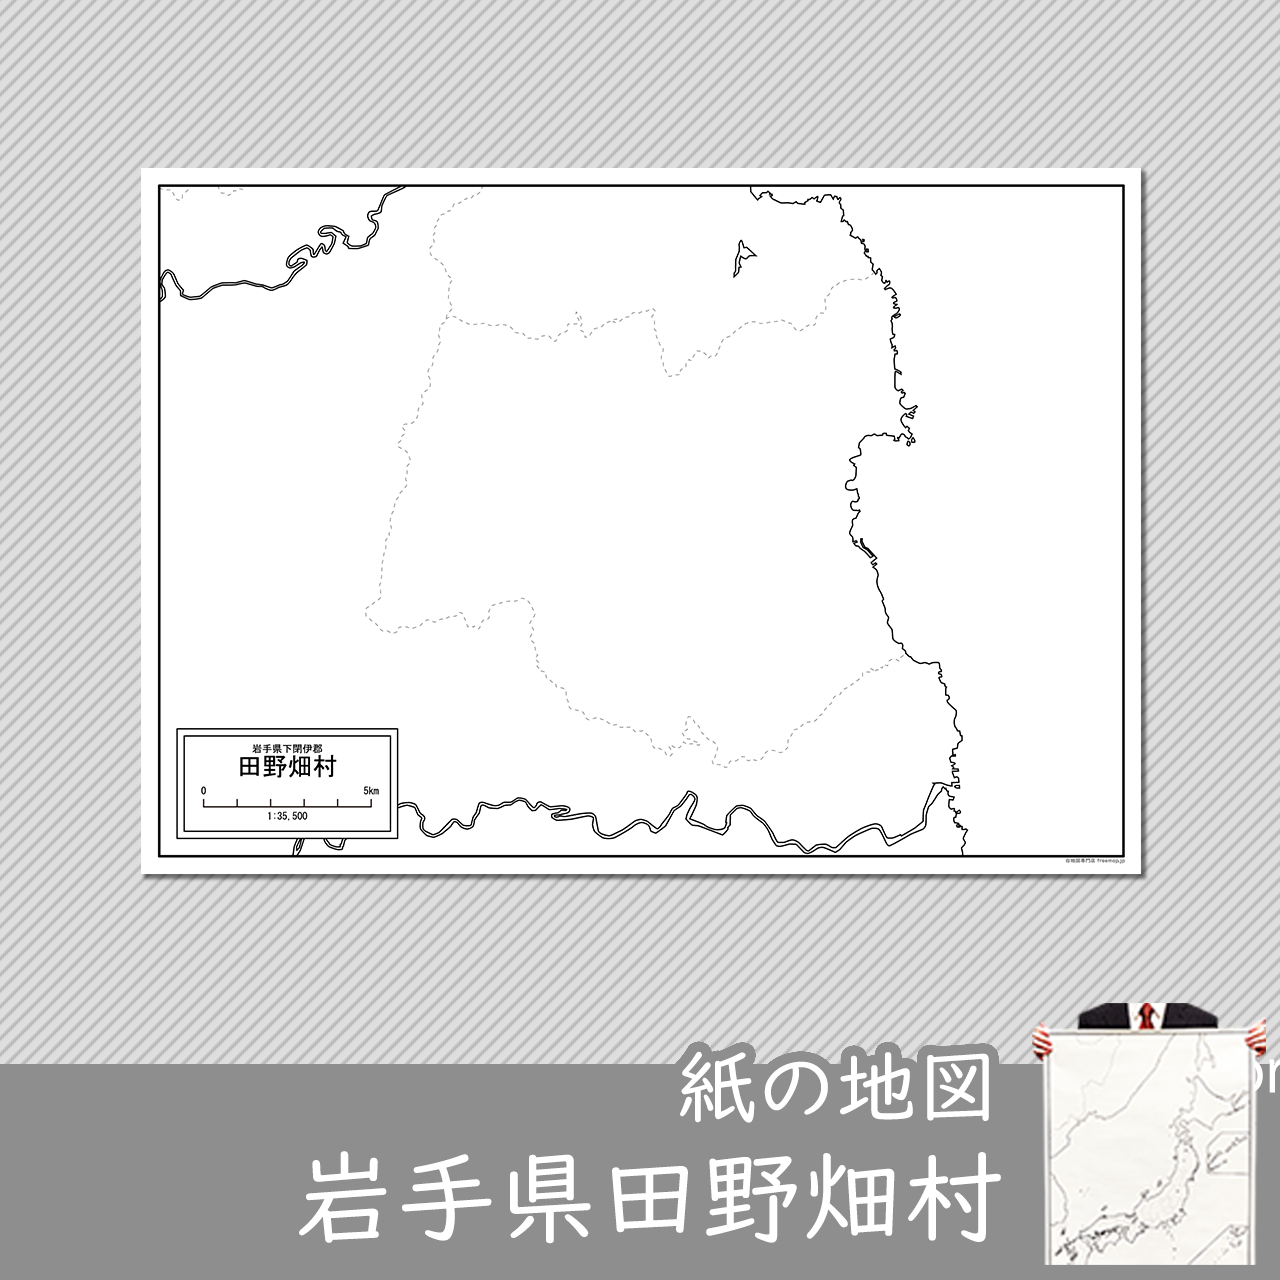 田野畑村の紙の白地図のサムネイル